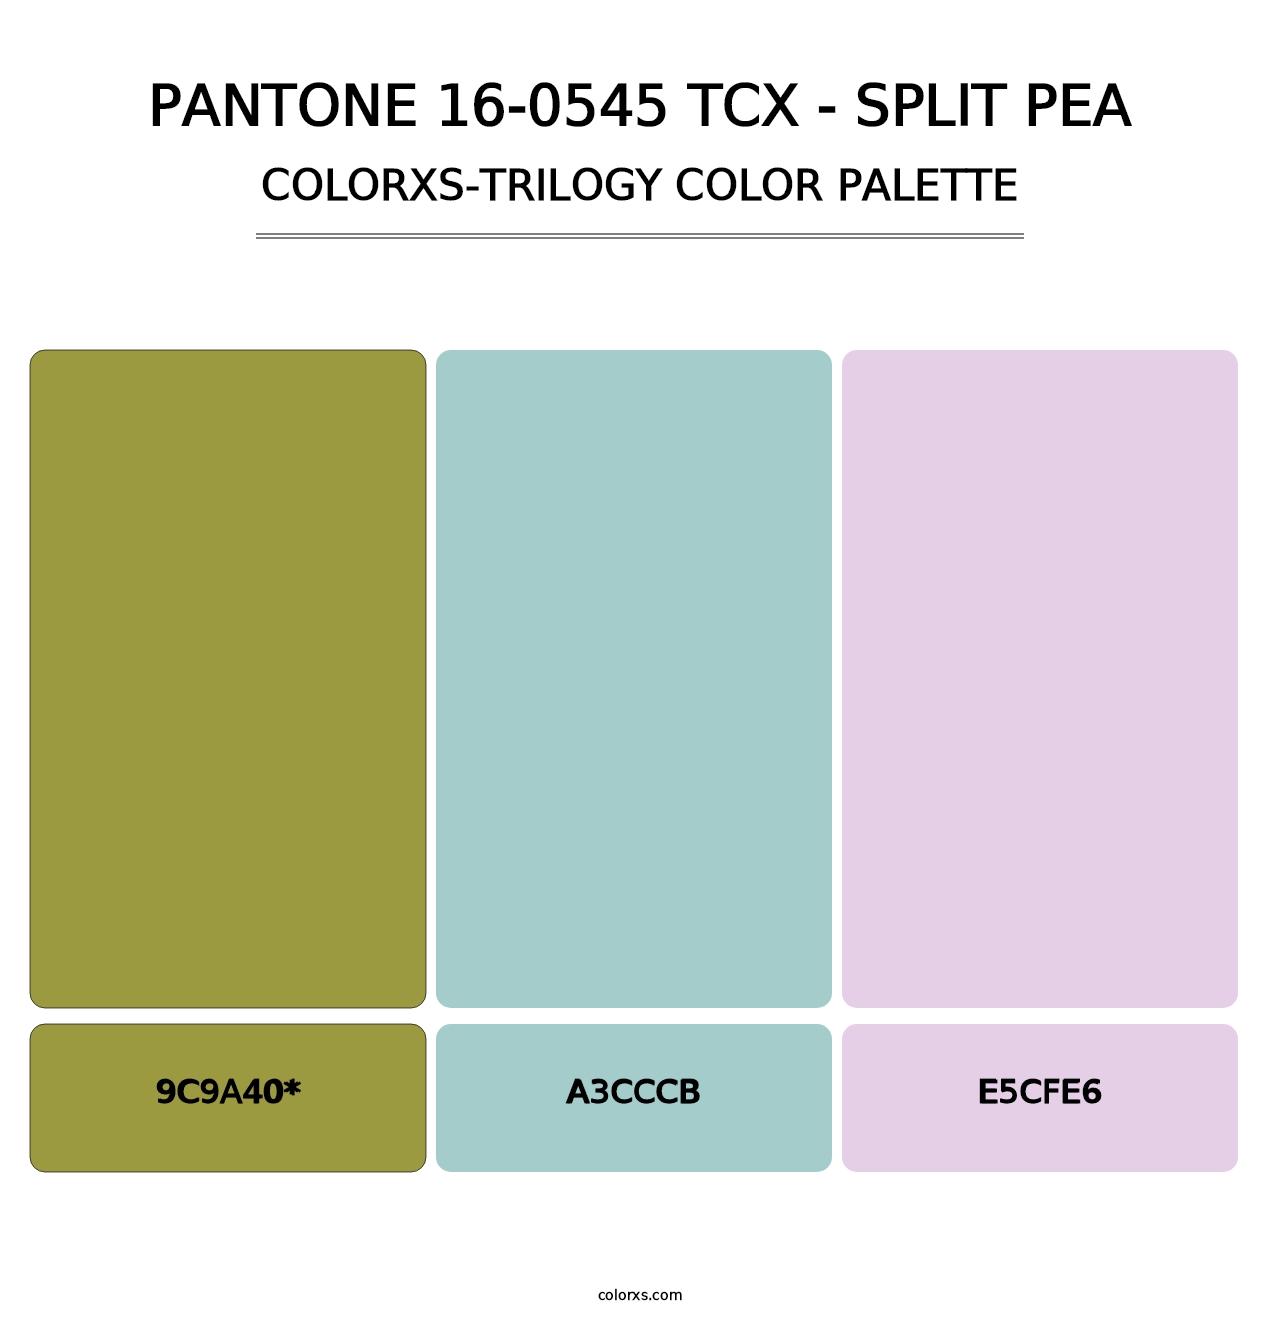 PANTONE 16-0545 TCX - Split Pea - Colorxs Trilogy Palette